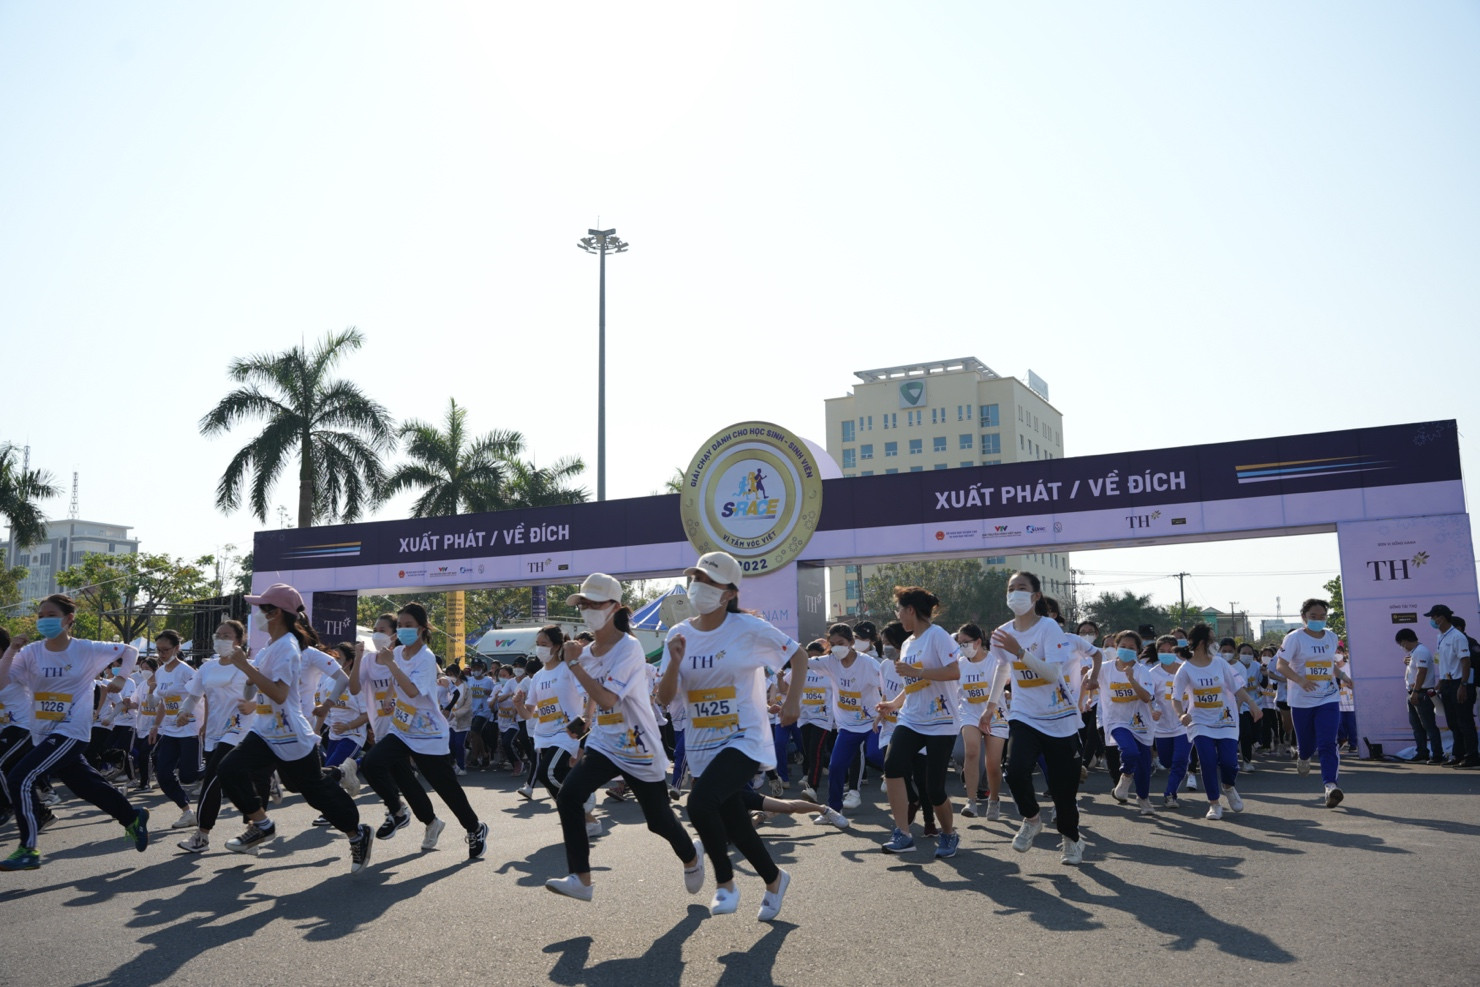 Gần 4.000 học sinh, sinh viên tỉnh Quảng Nam tham gia giải chạy với chủ đề “Bản lĩnh”